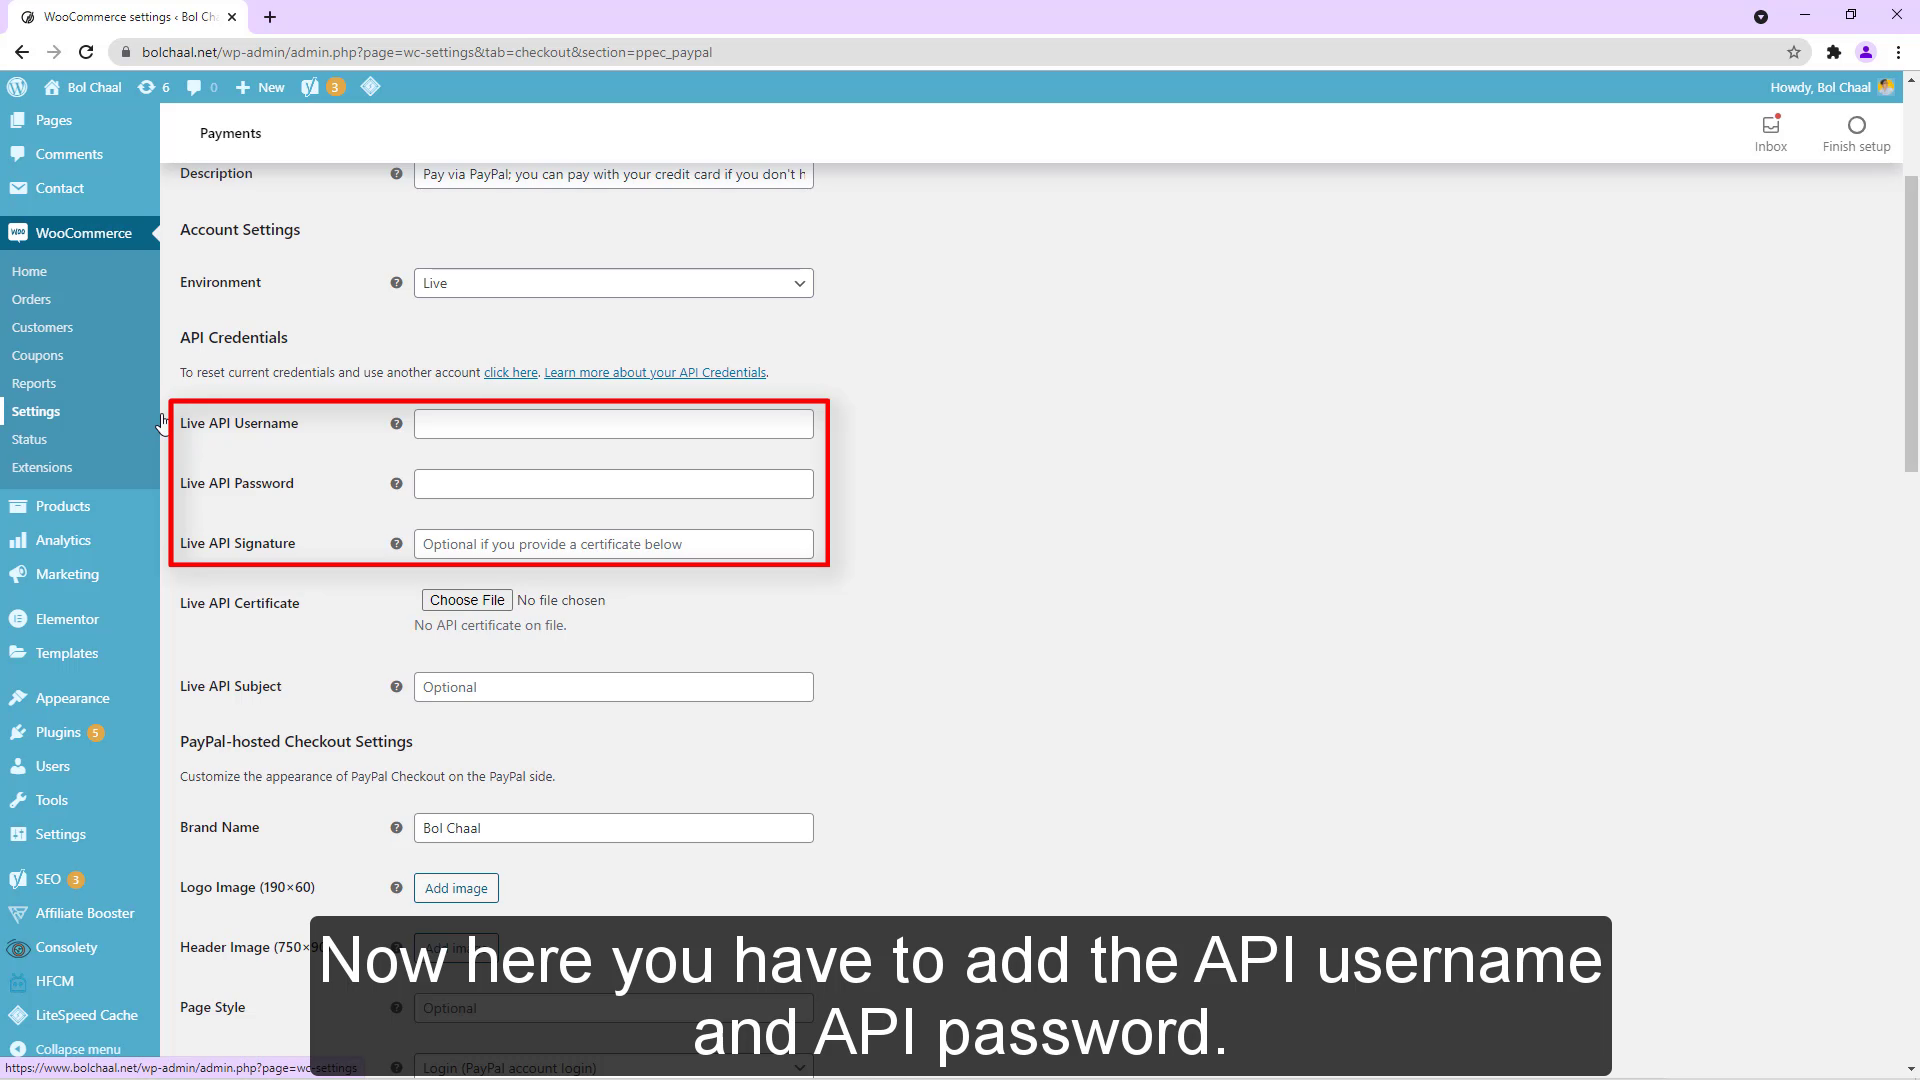 Ahora aquí tienes que agregar el nombre de usuario y la contraseña de la API